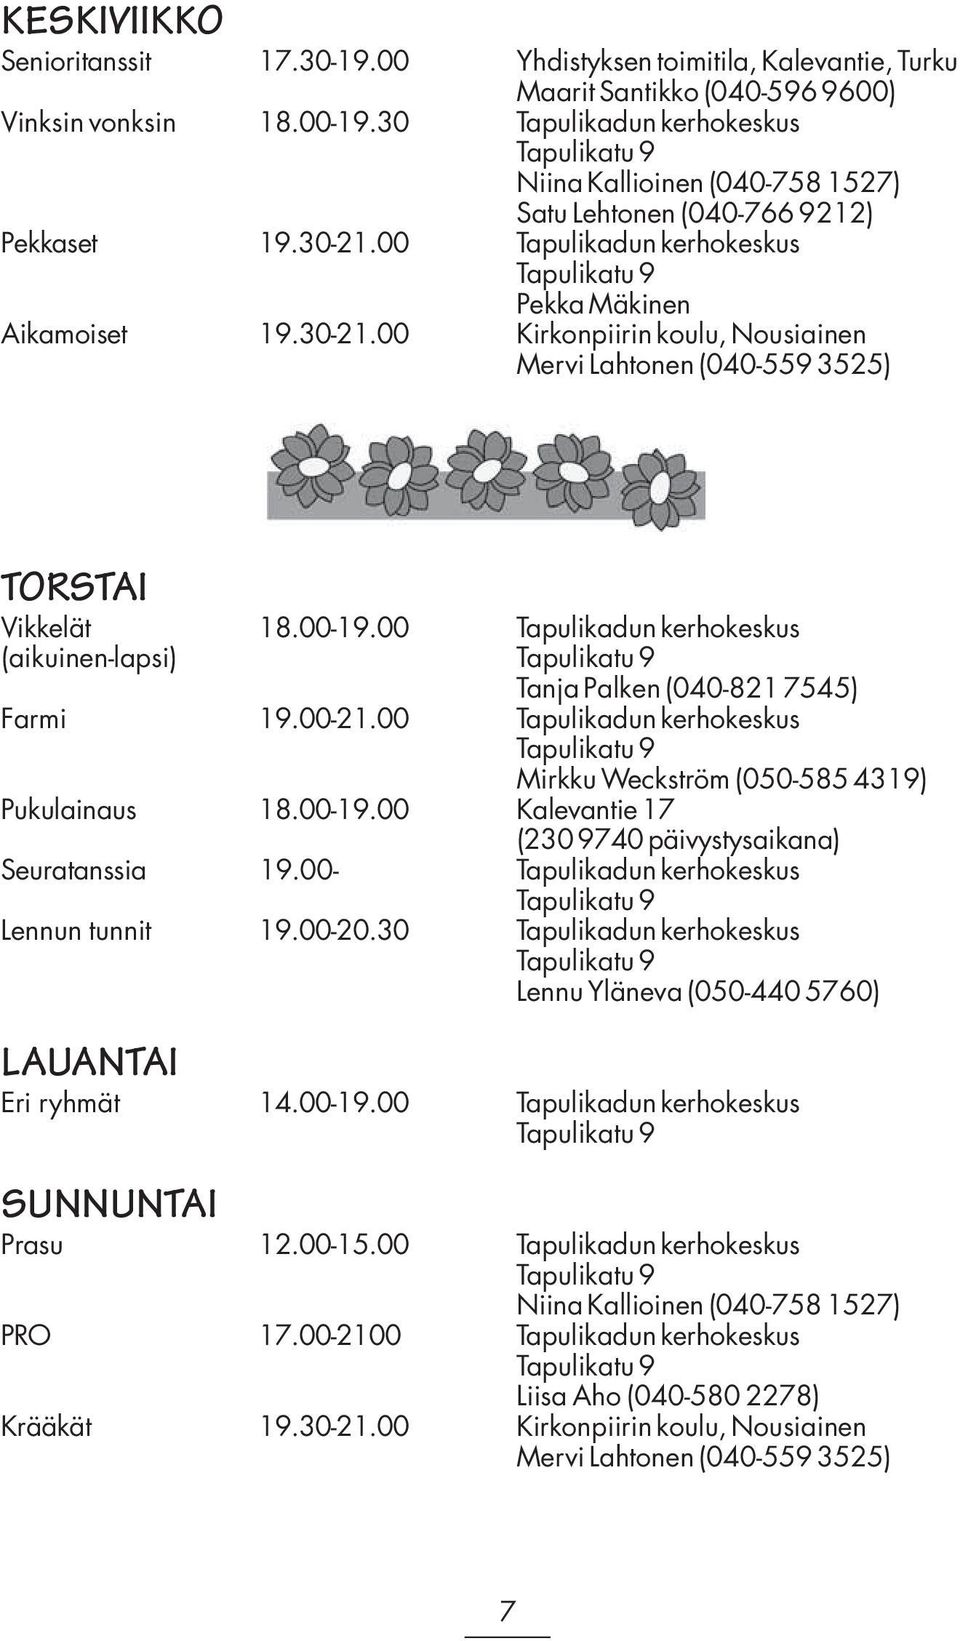 00-19.00 Tapulikadun kerhokeskus (aikuinen-lapsi) Tanja Palken (040-821 7545) Farmi 19.00-21.00 Tapulikadun kerhokeskus Mirkku Weckström (050-585 4319) Pukulainaus 18.00-19.00 Kalevantie 17 (230 9740 päivystysaikana) Seuratanssia 19.